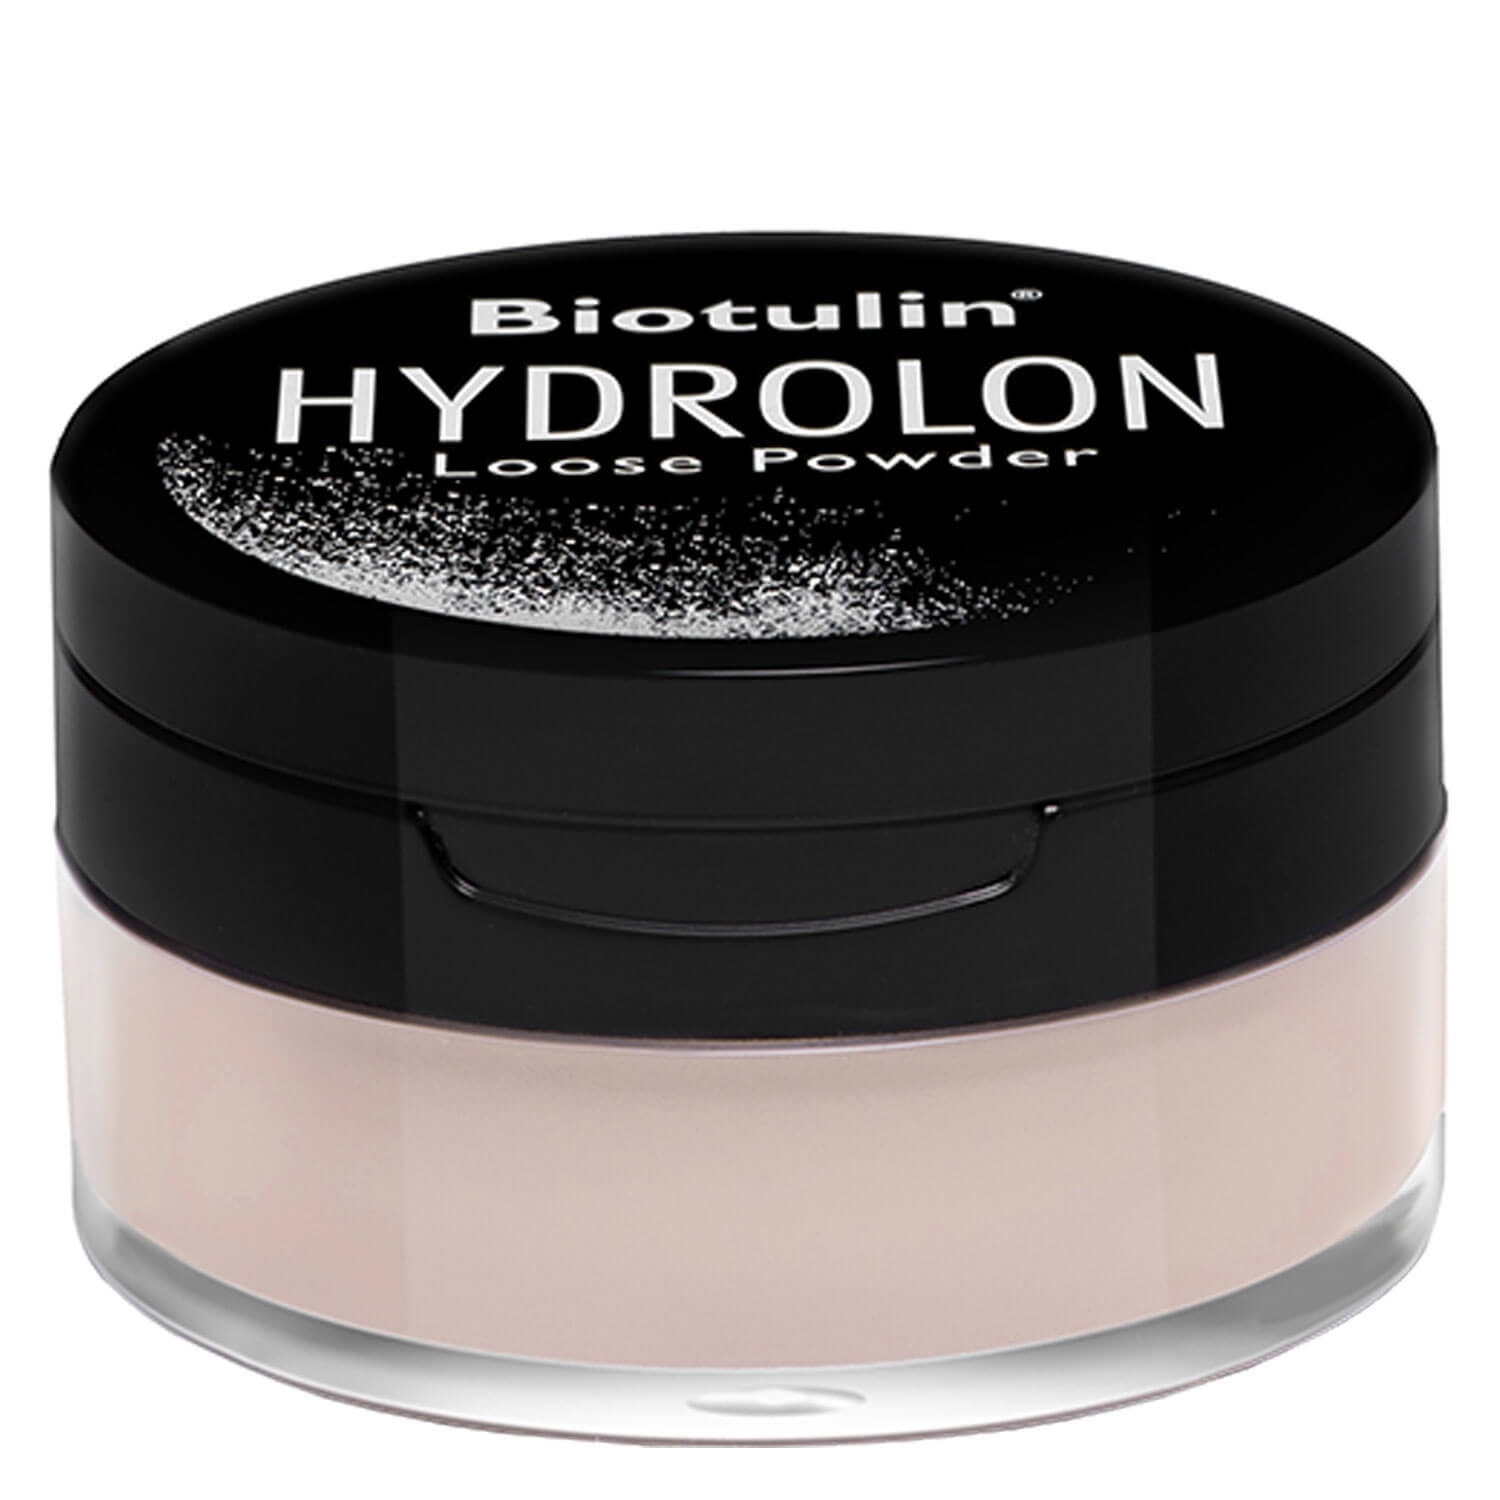 Produktbild von Biotulin - Hydrolon Loose Powder